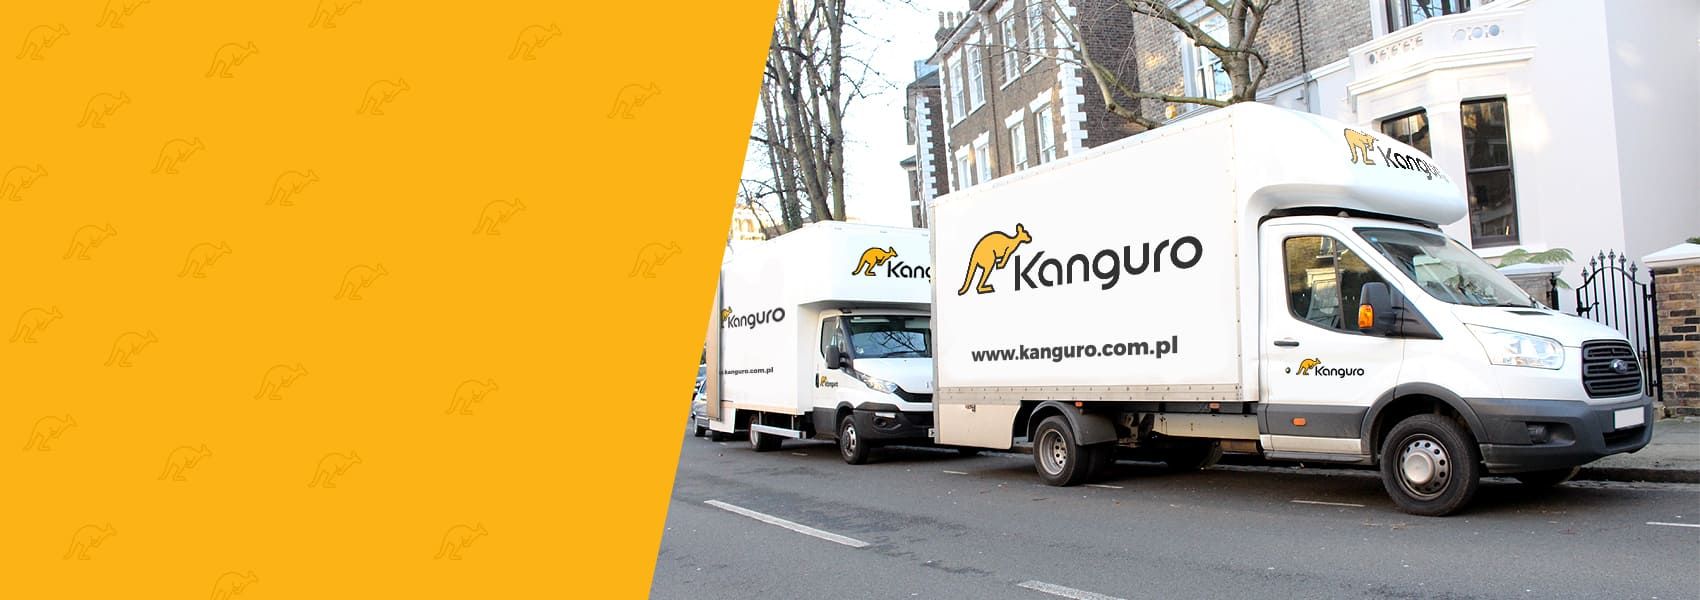 biała ciężarówka z logo Kanguro przeprowadzki z Niemiec do Polski